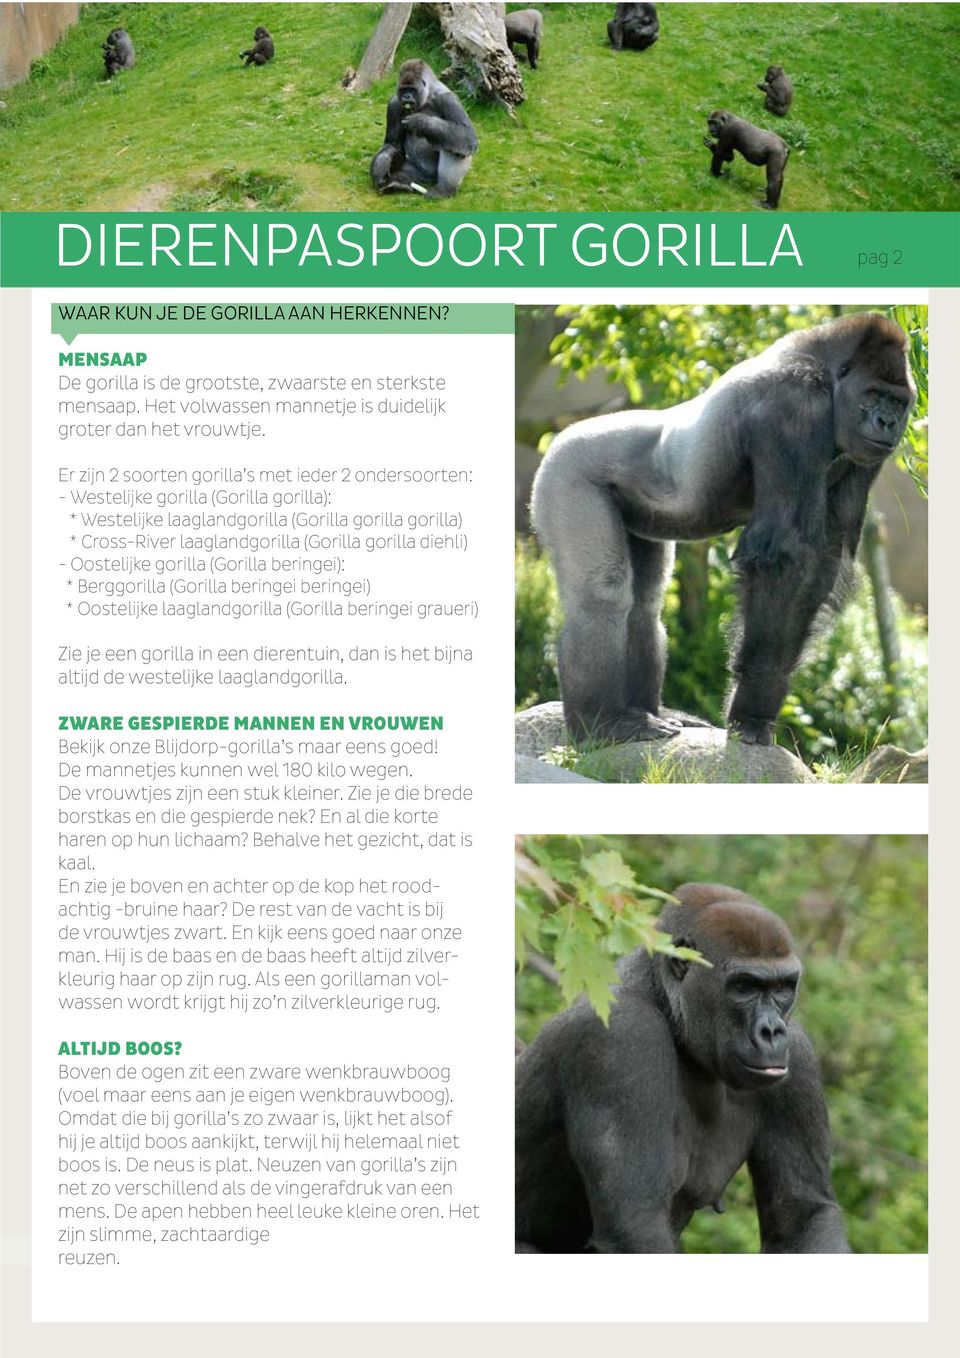 diehli) - Oostelijke gorilla (Gorilla beringei): * Berggorilla (Gorilla beringei beringei) * Oostelijke laaglandgorilla (Gorilla beringei graueri) Zie je een gorilla in een dierentuin, dan is het